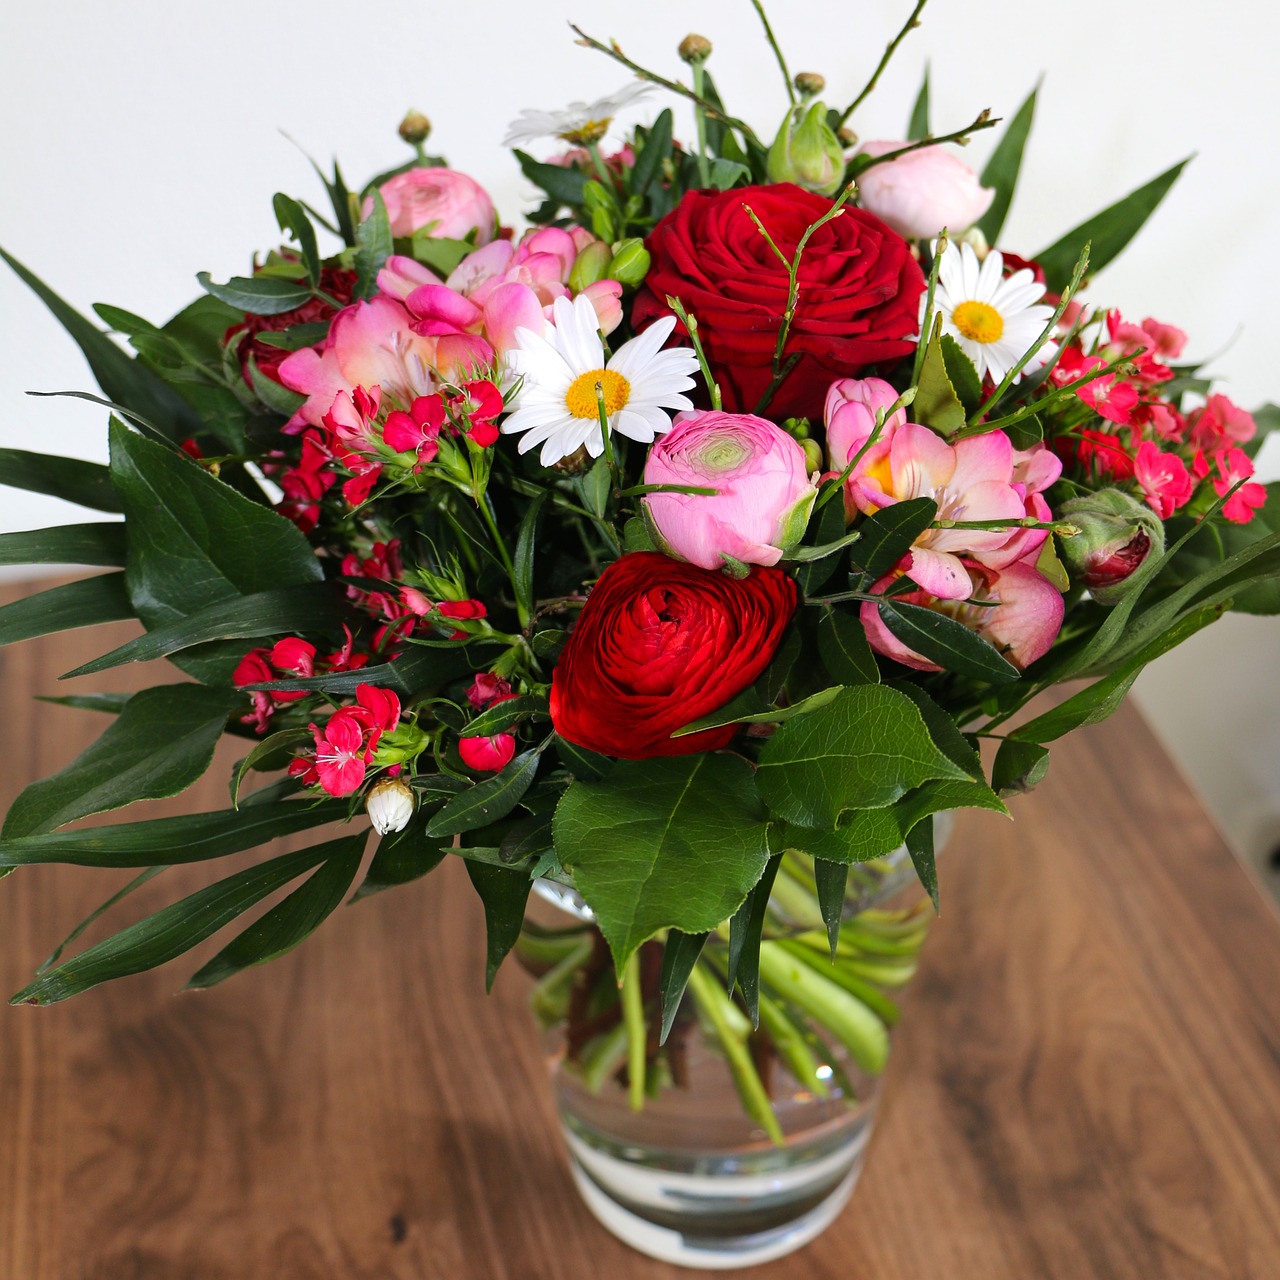 pik haak schroef Bloemen bestellen en bloemen bezorgen: vergelijk bloemisten